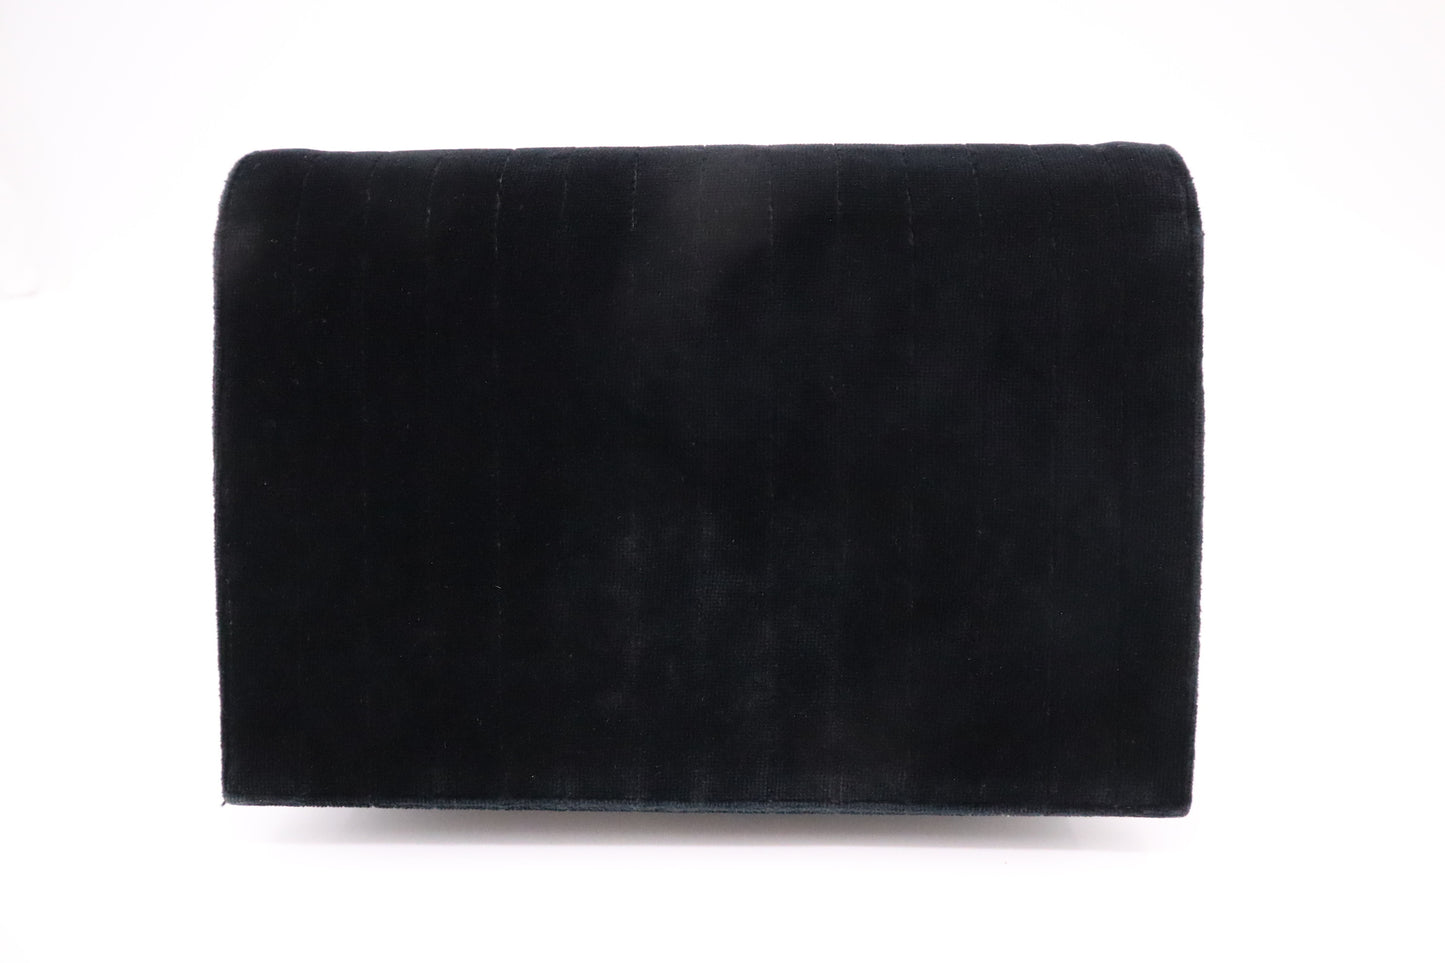 Chanel Shoulder Bag in Black Velvet